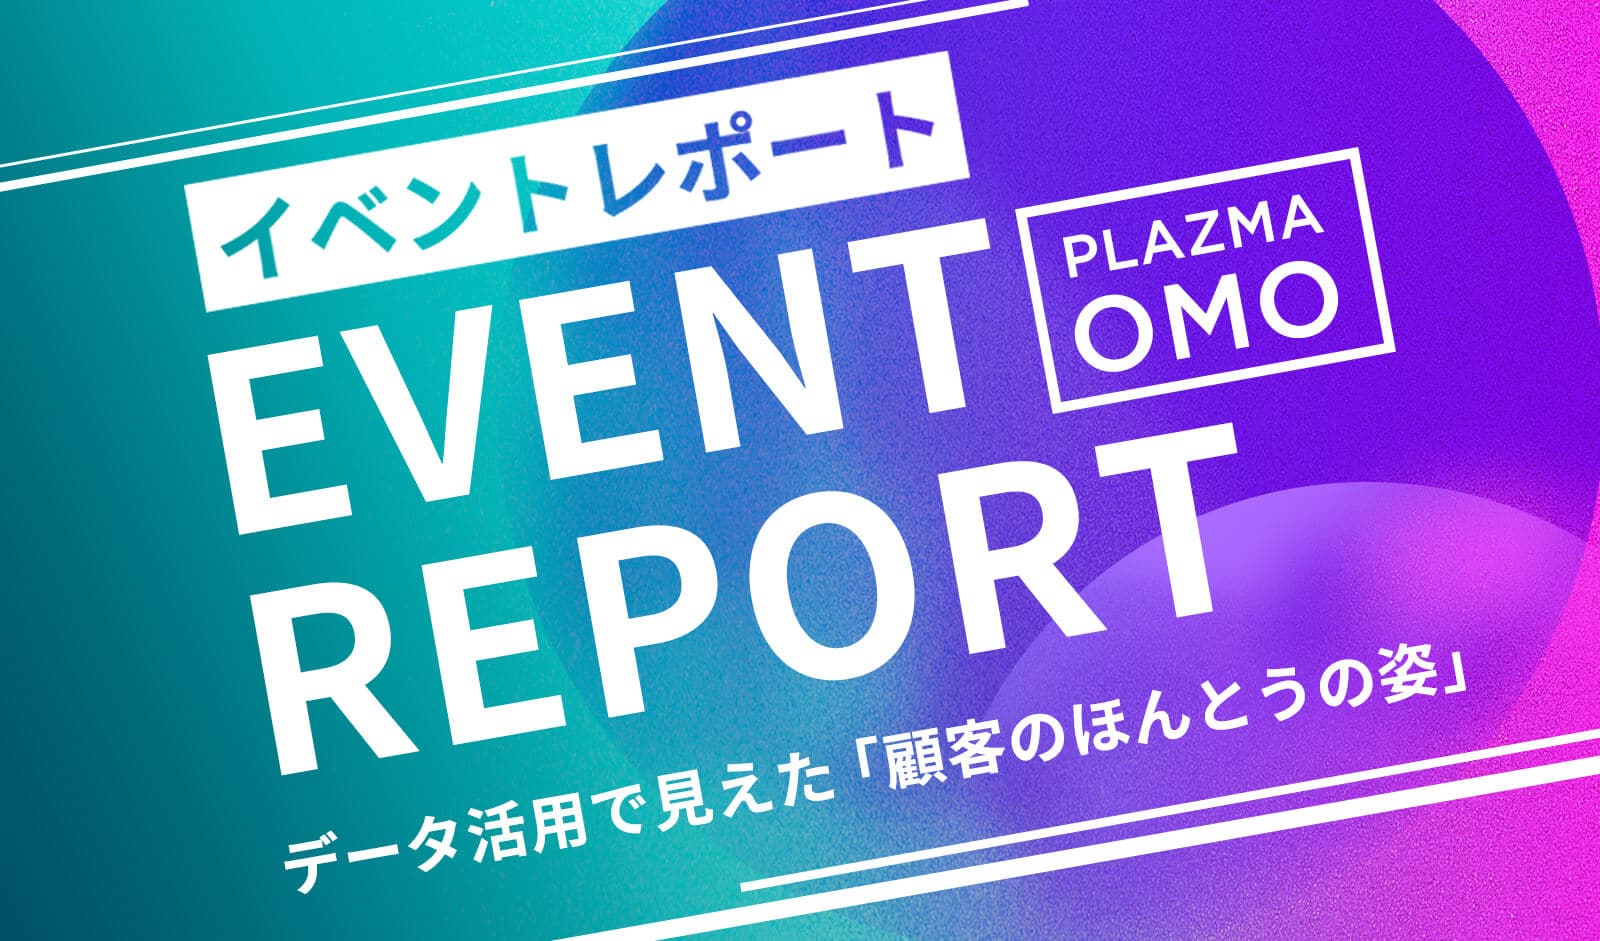 OMOにおけるデータ活用で見えた「顧客のほんとうの姿」| PLAZMA OMO イベントレポート